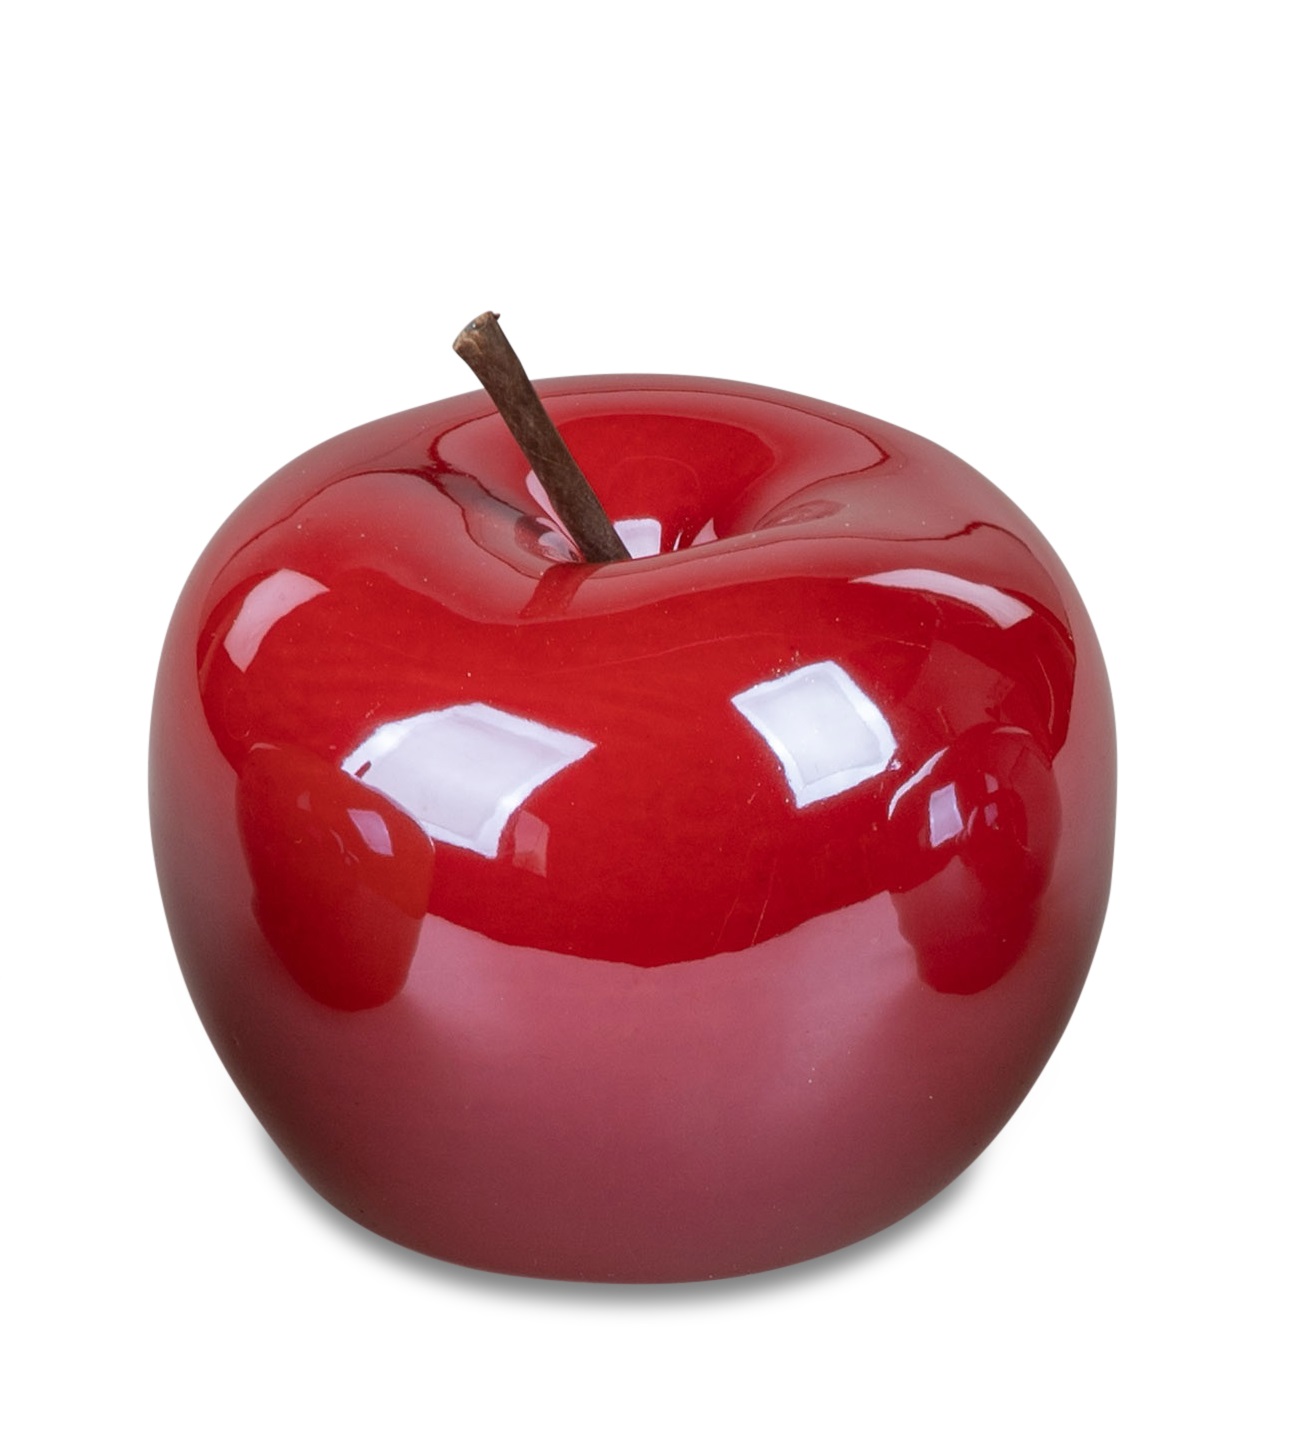 Deko-Objekt Apfel 10 cm Lüster Trend rot Deko Apfel Tischdekor Formano